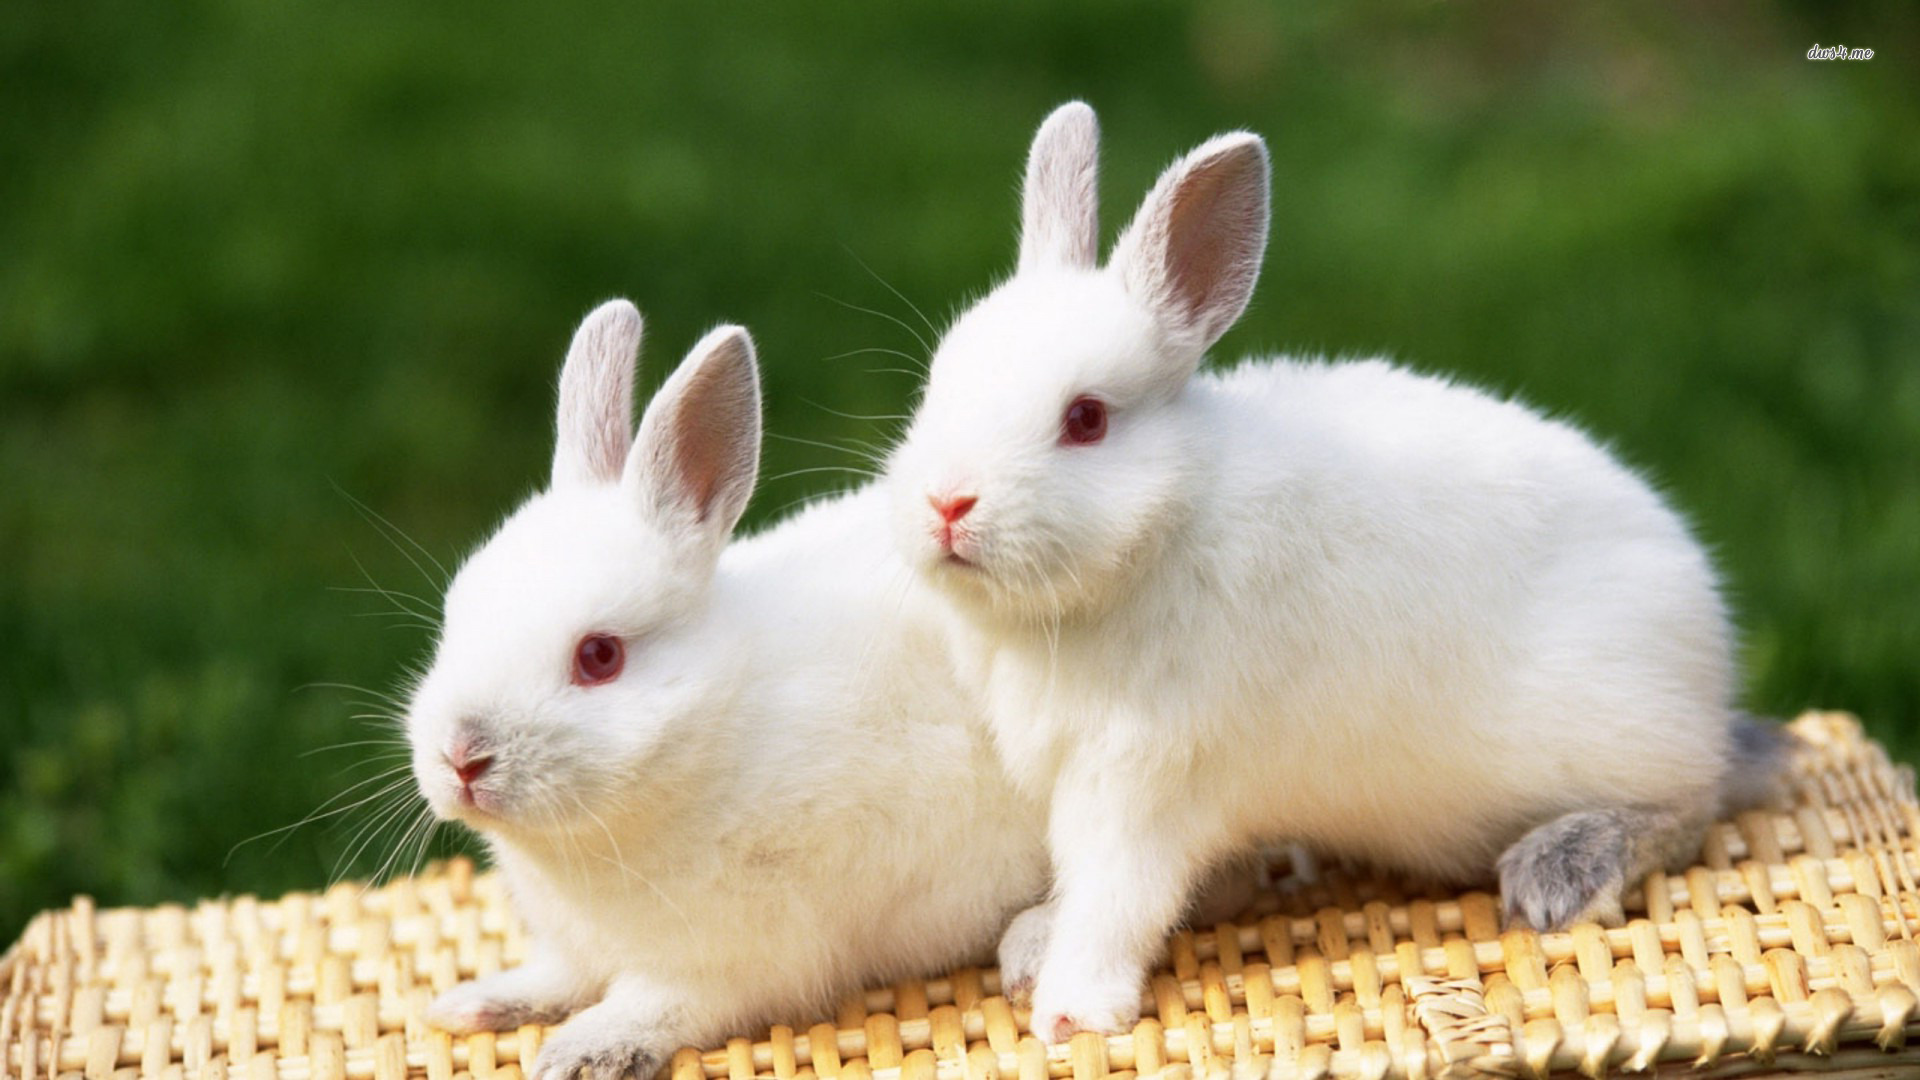 Cute White Rabbit Image Baltana